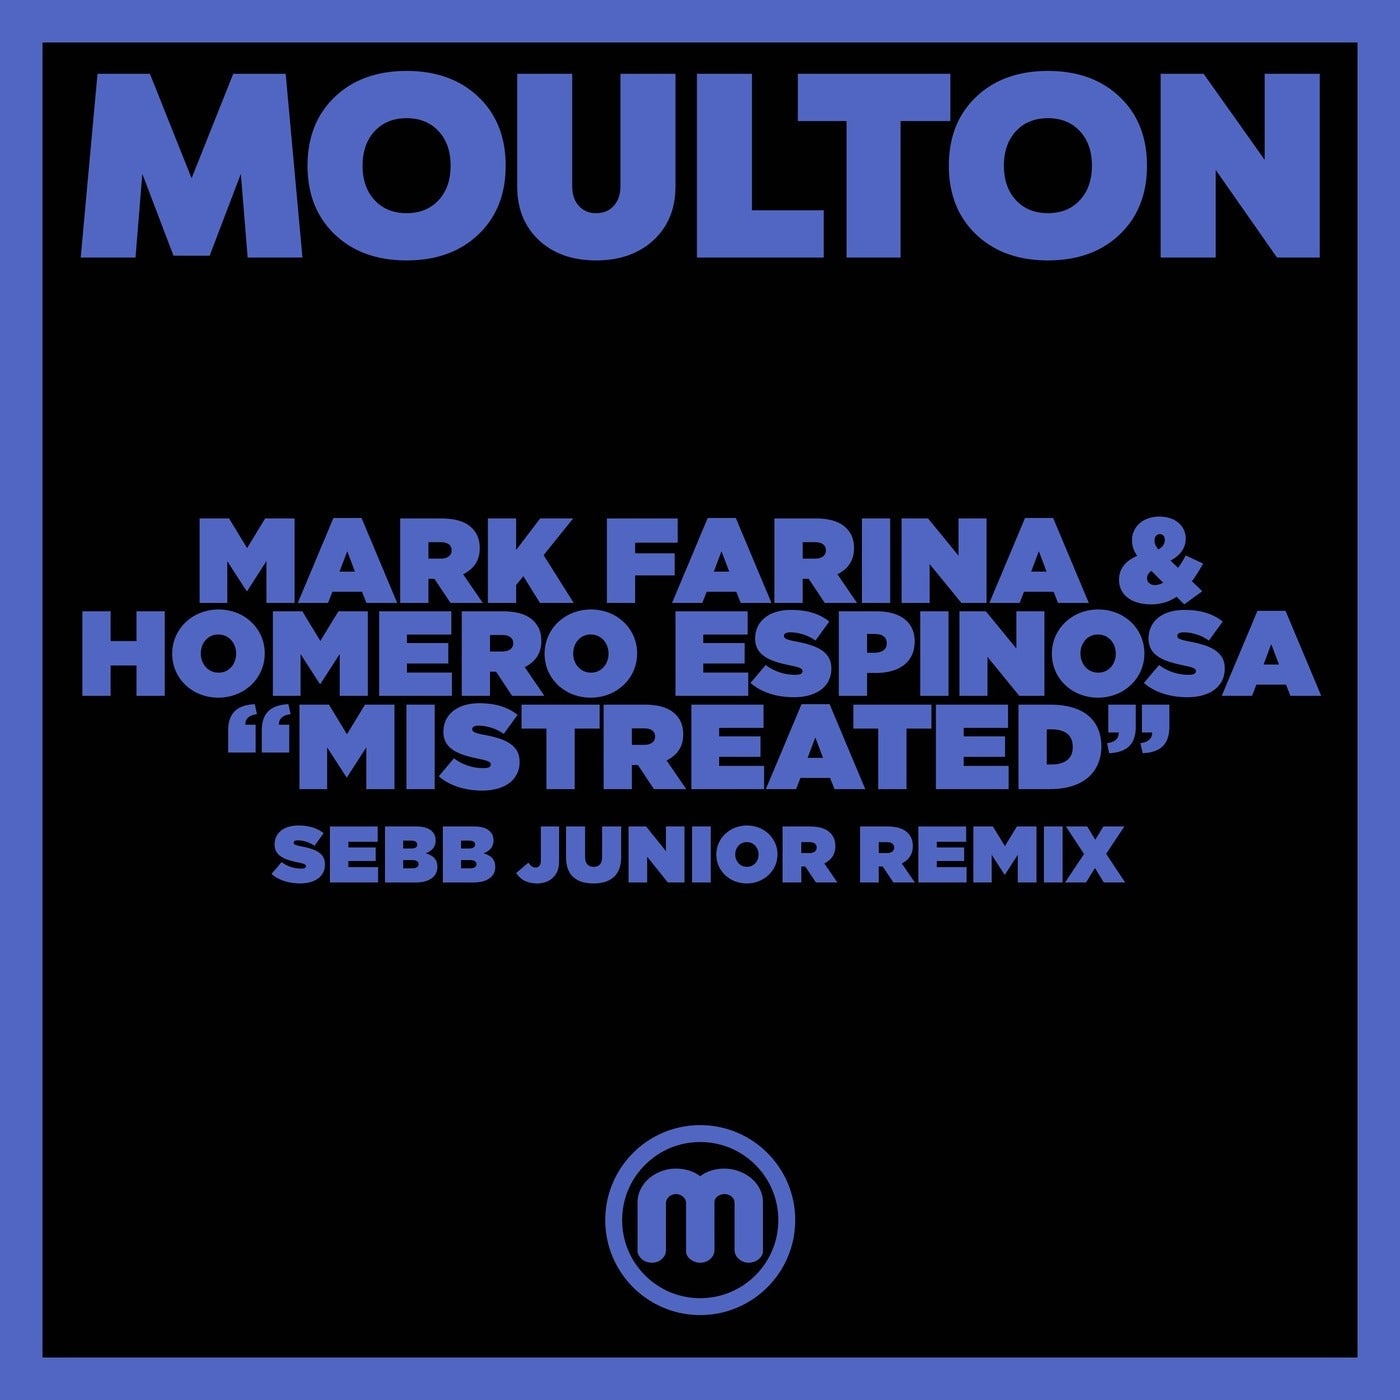 Mark Farina, Homero Espinosa - Mistreated (Sebb Junior Remix) [MM231]